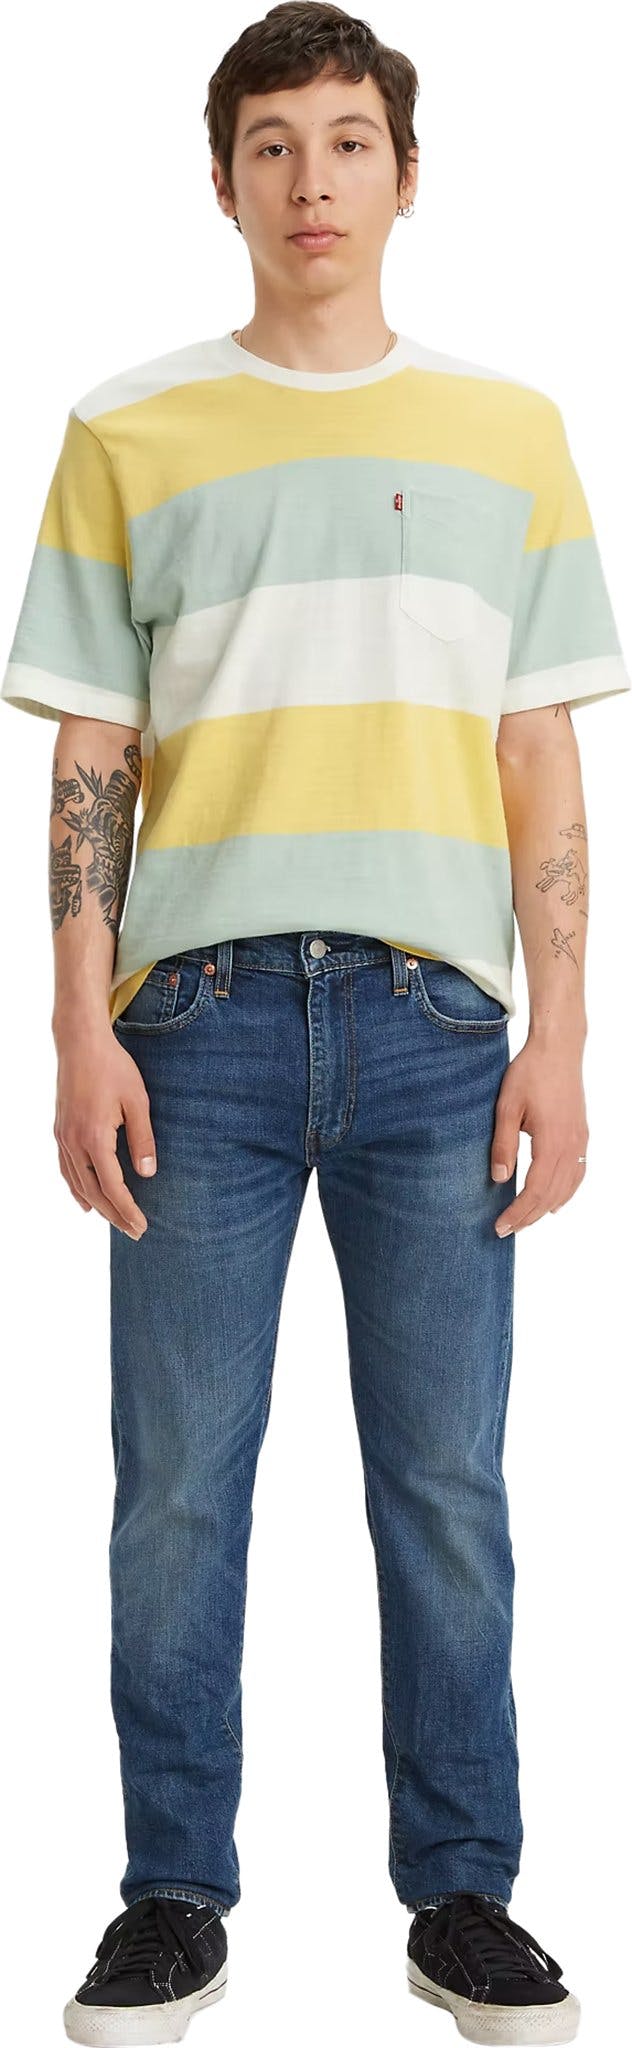 Image de produit pour Jeans 512 Slim Taper Fit - Homme